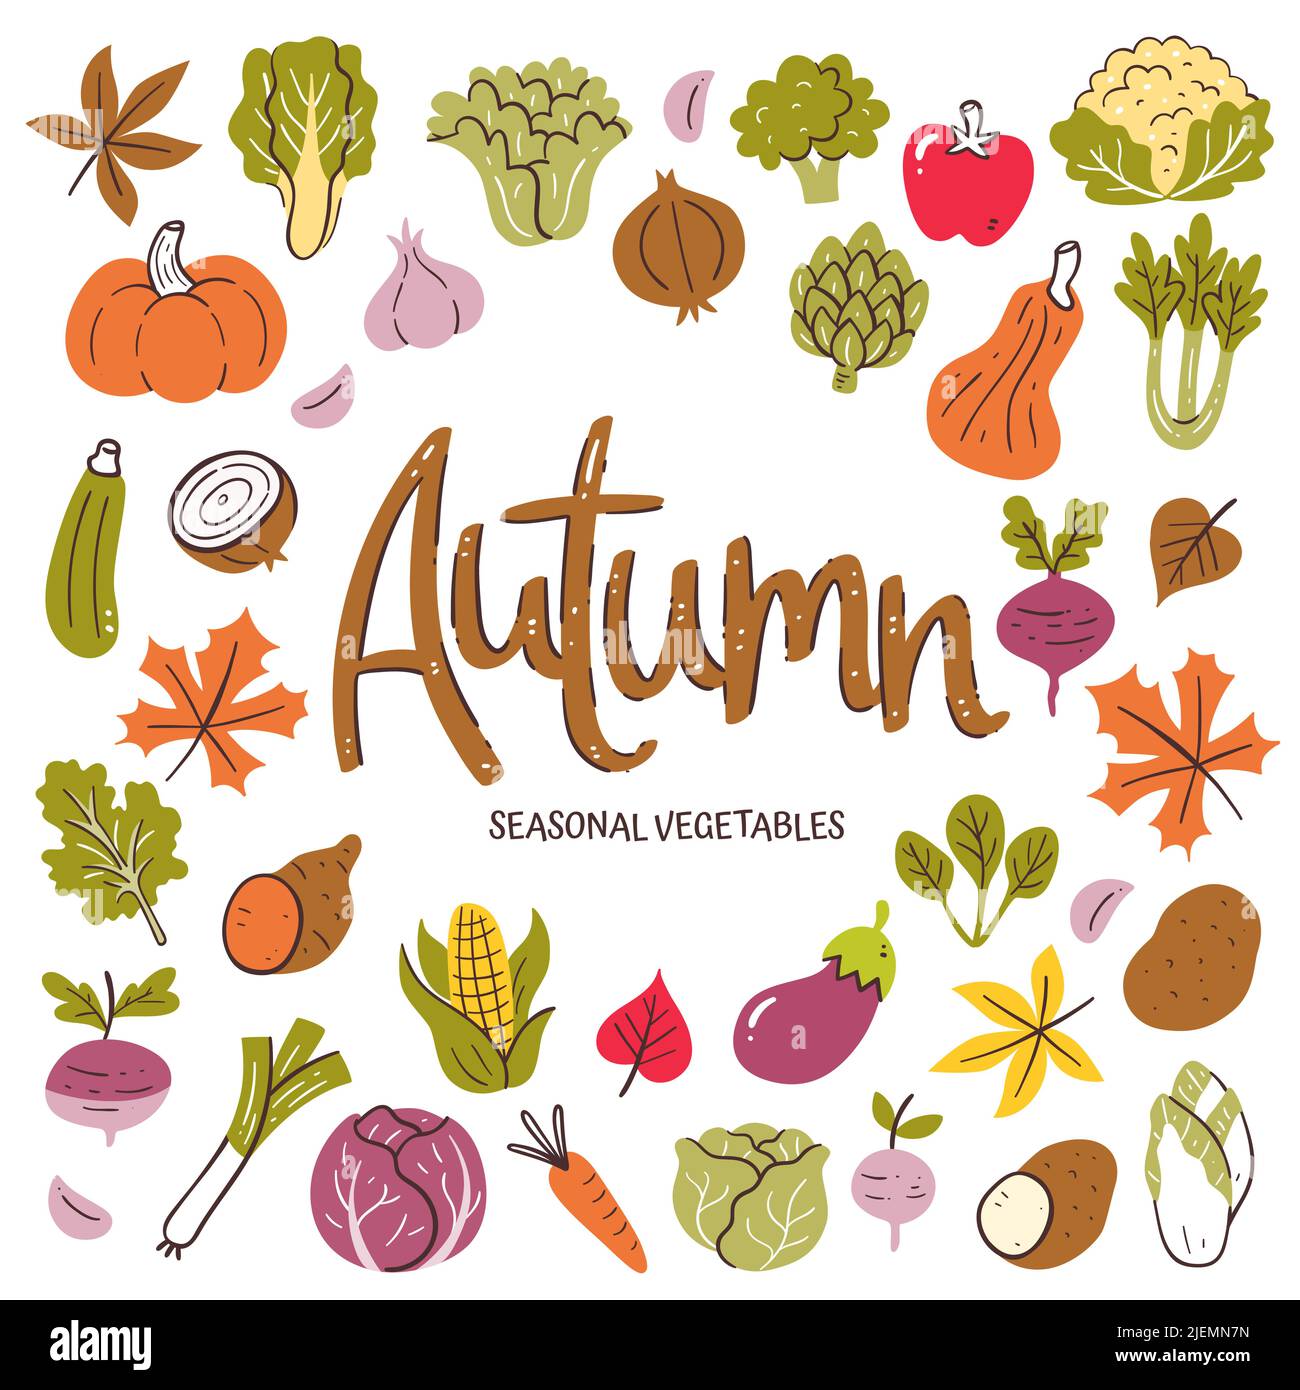 Saisonales Gemüse im Hintergrund. Herbstgemüse Komposition aus bunten handgezeichneten Vektor-Icons, isoliert auf weißem Hintergrund. Stock Vektor